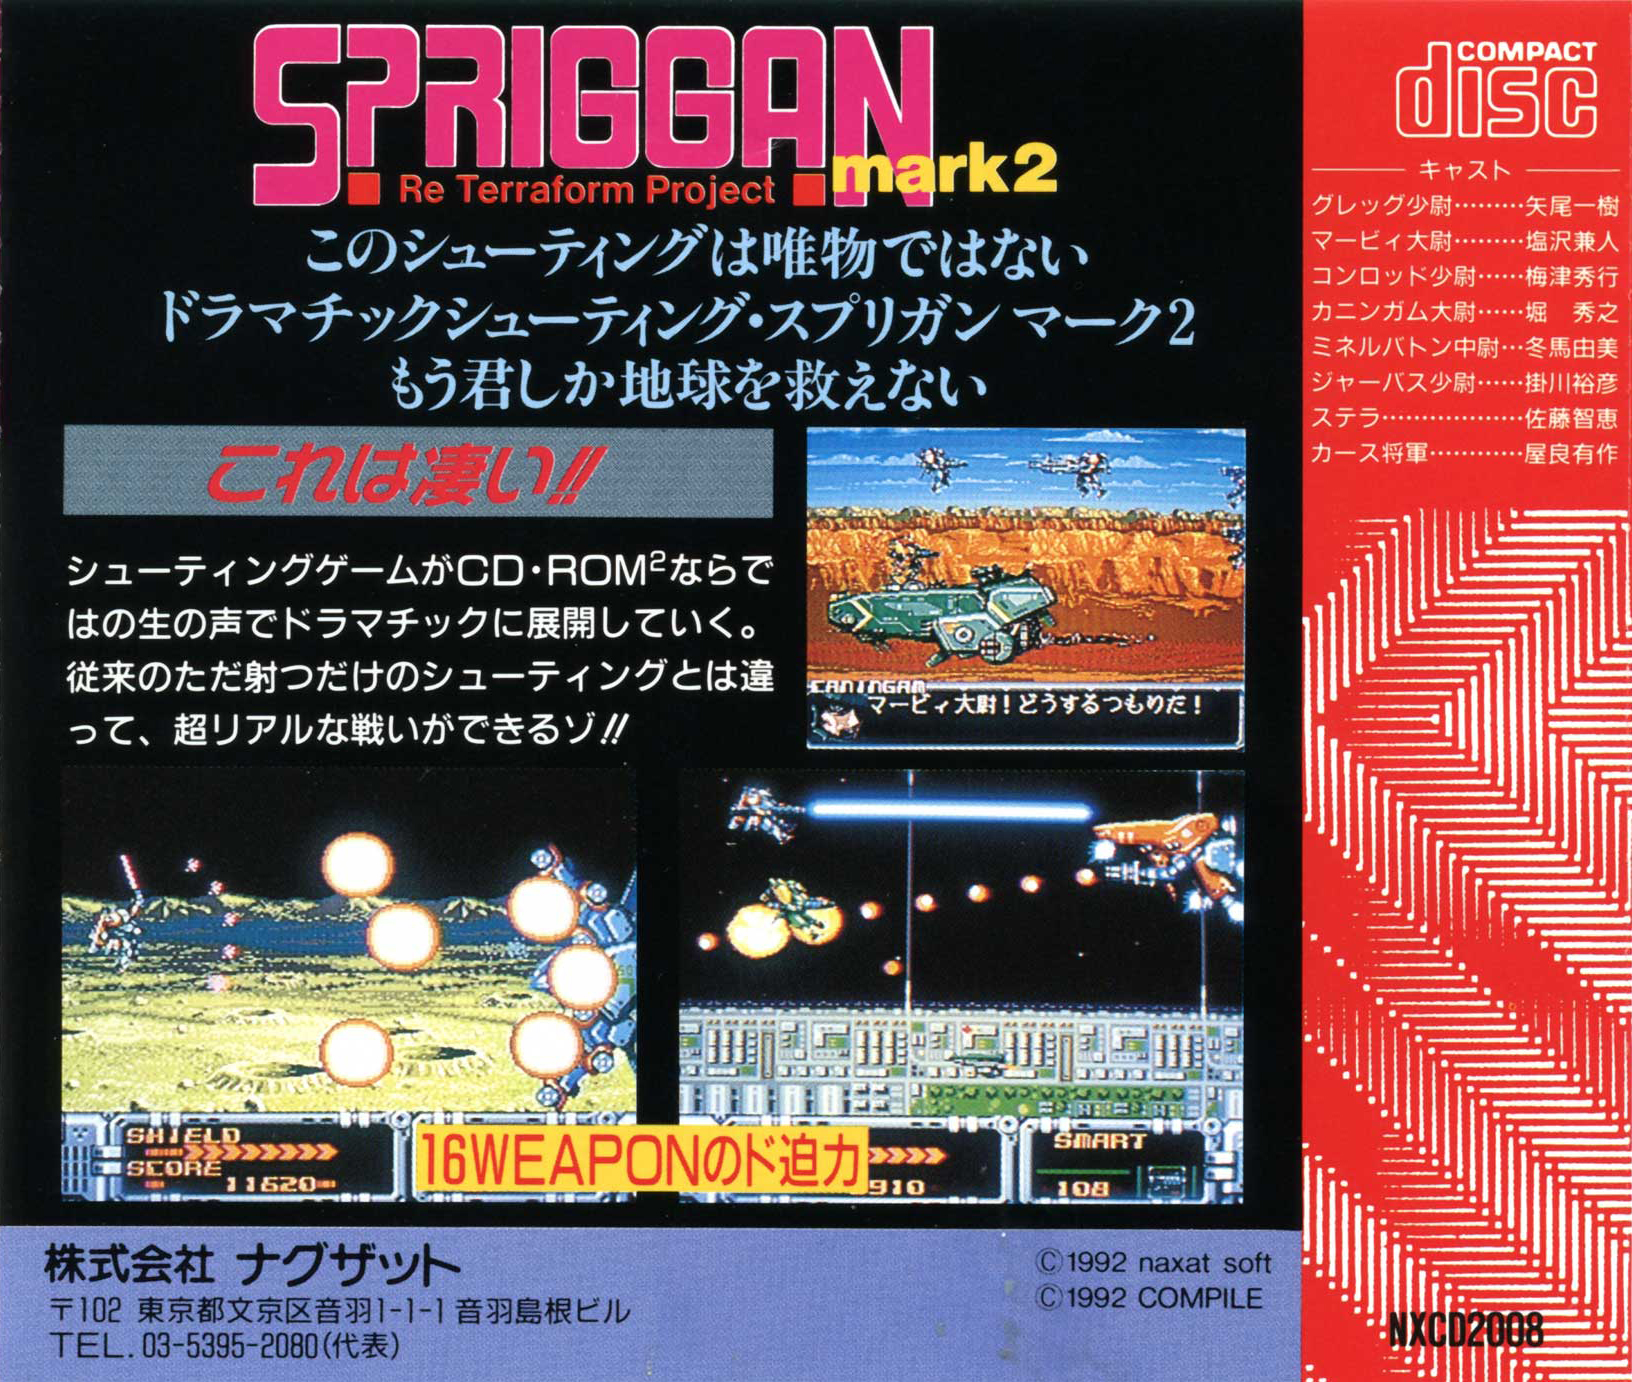 スプリガンmark2 Re-Terraform Project 中古PCE日本版 - Nintendo Switch